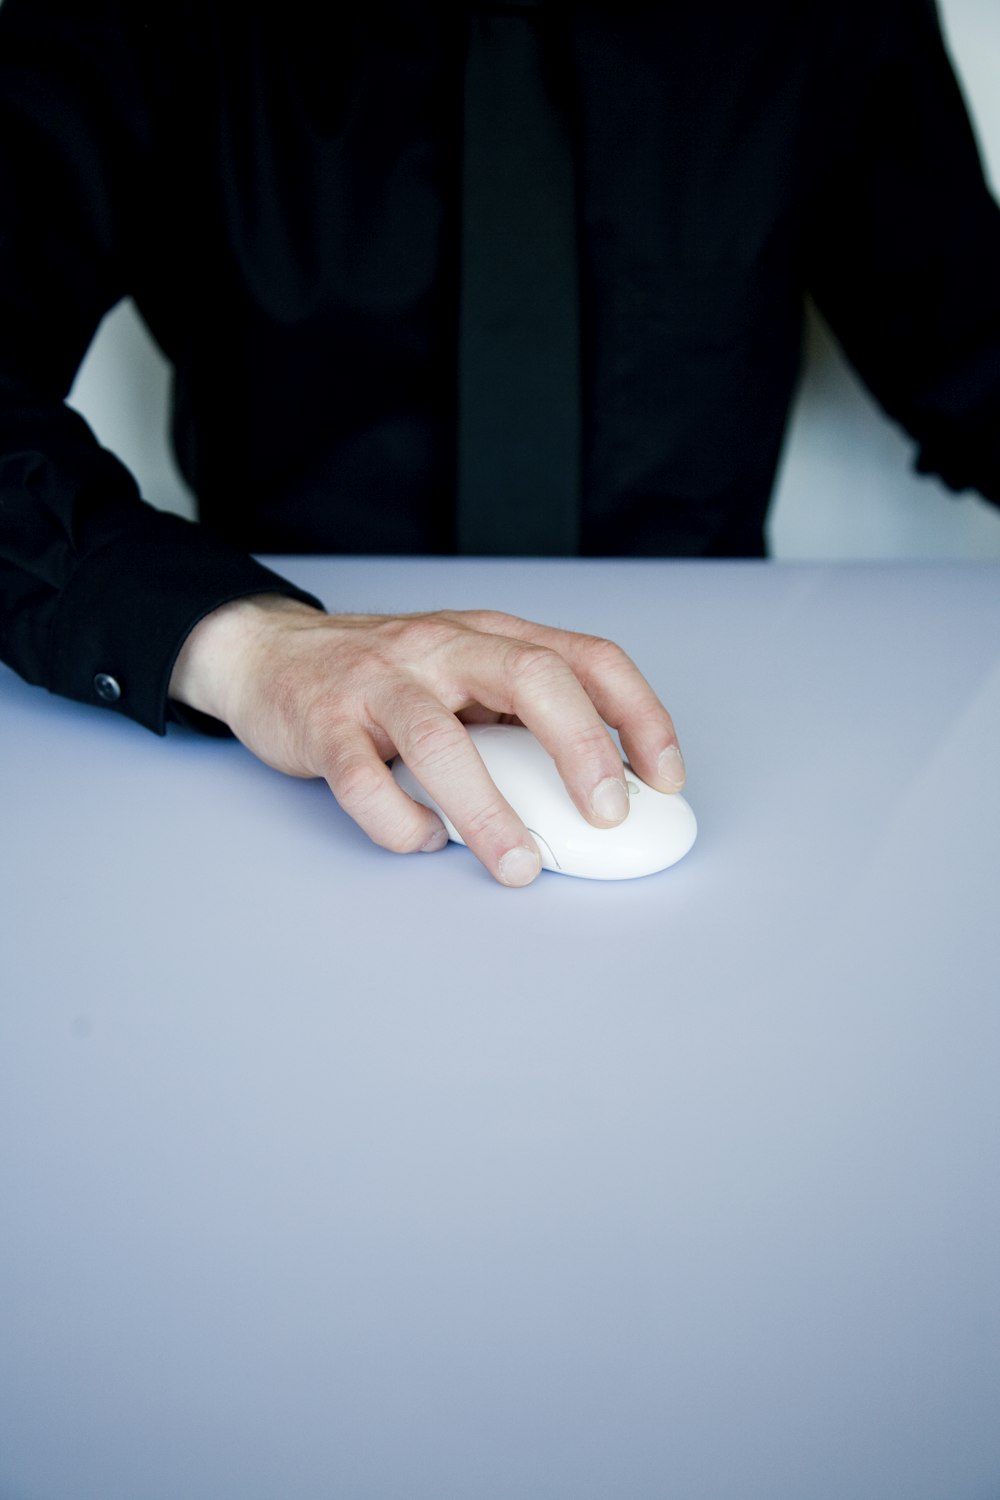 pessoa segurando mouse de computador branco sem fio